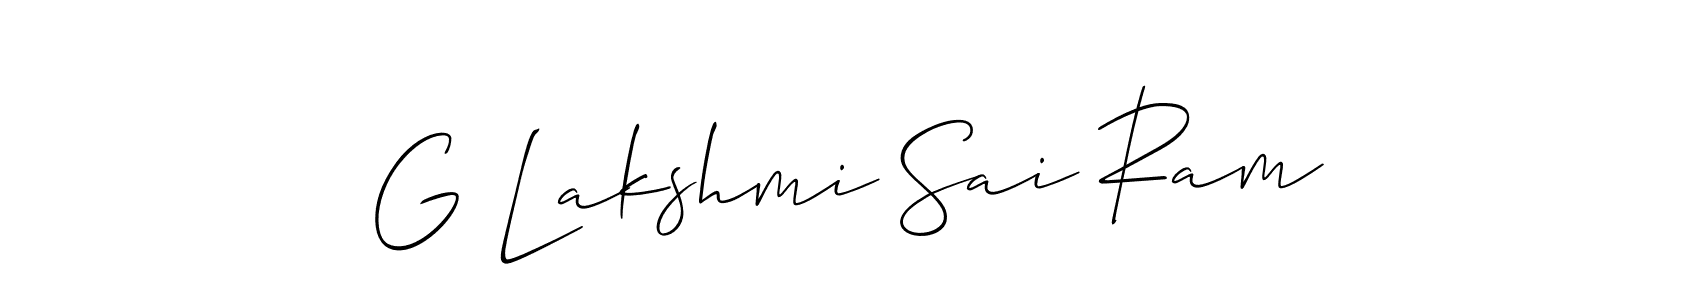 How to make G Lakshmi Sai Ram signature? Allison_Script is a professional autograph style. Create handwritten signature for G Lakshmi Sai Ram name. G Lakshmi Sai Ram signature style 2 images and pictures png